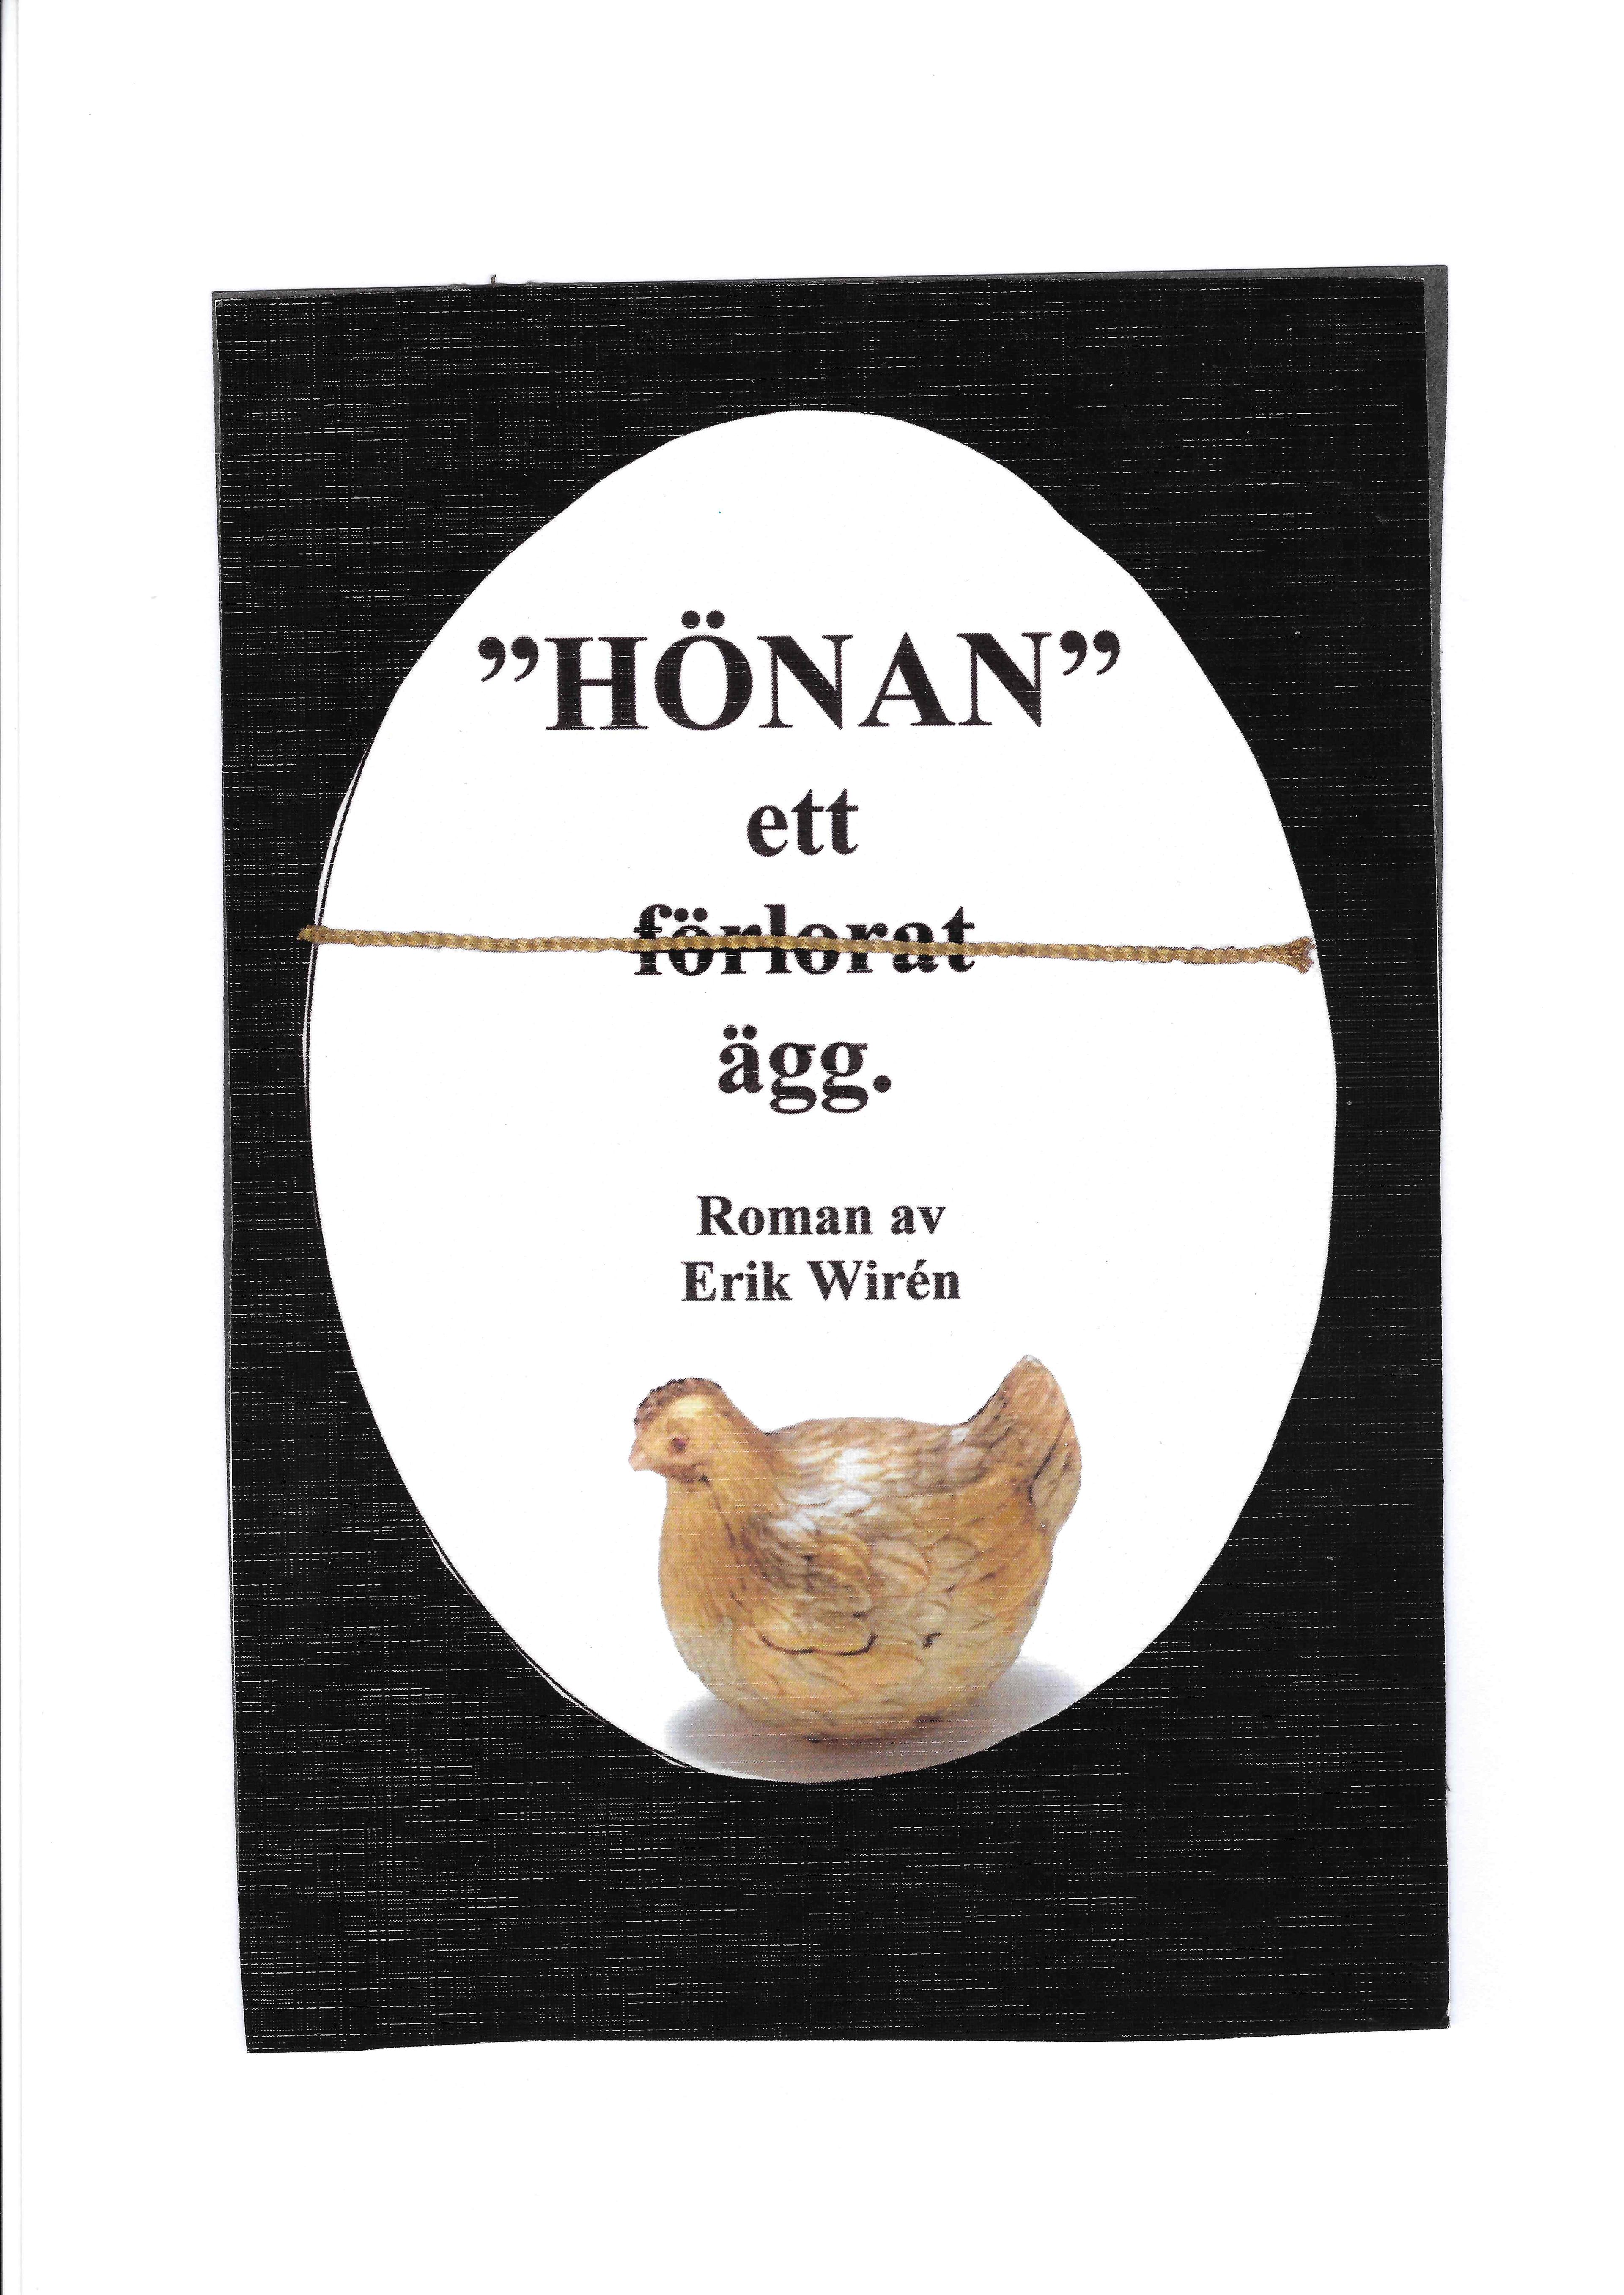 Hönan - ett (förlorat) ägg, e-bok av Erik Wirén